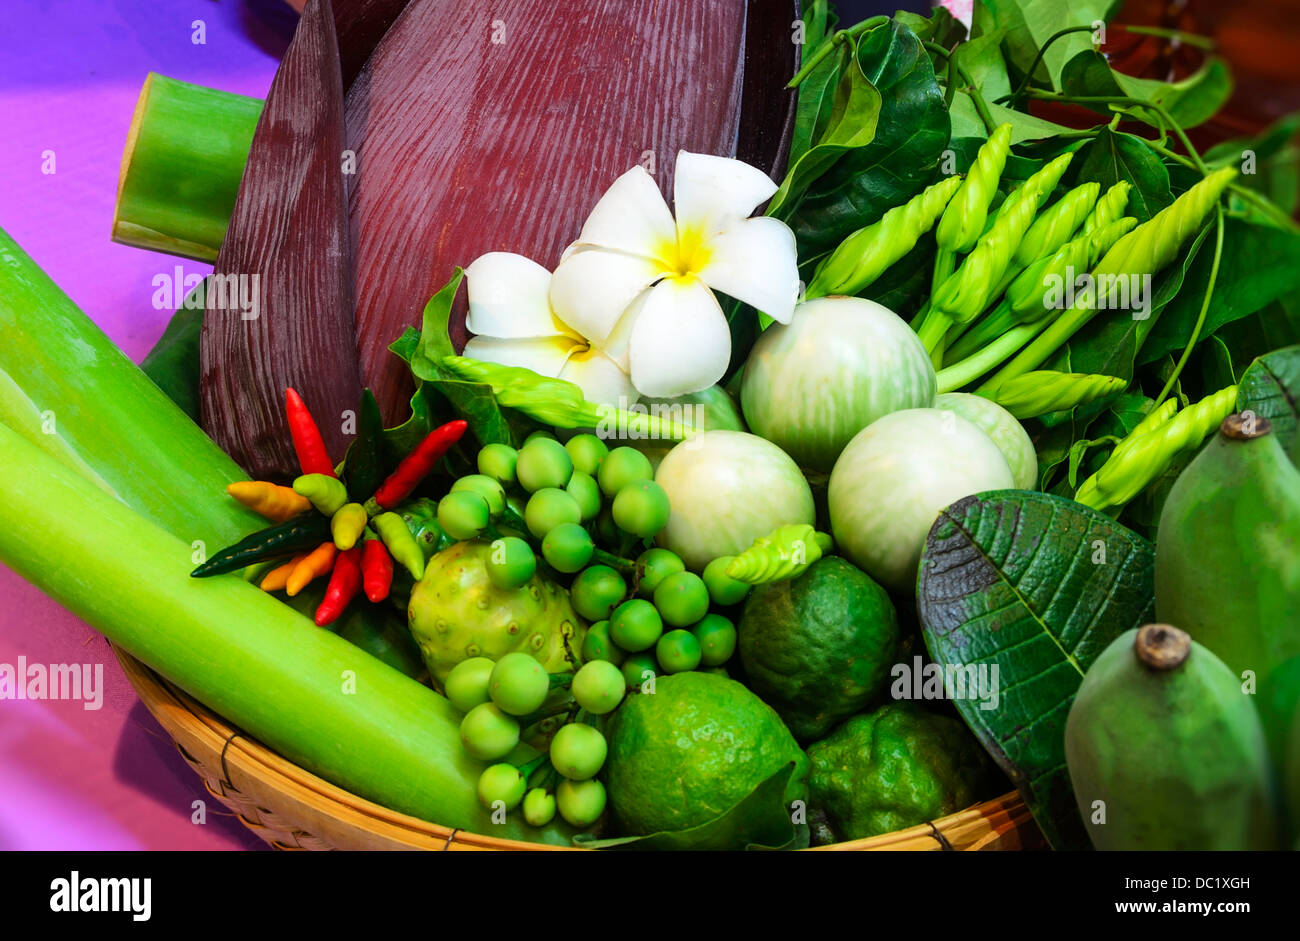 Bellissima la dieta alimentare frutta fresca salute sano verde pasto mercato nutrizione naturale organico gustosi dolci verdure vegetale vege Foto Stock